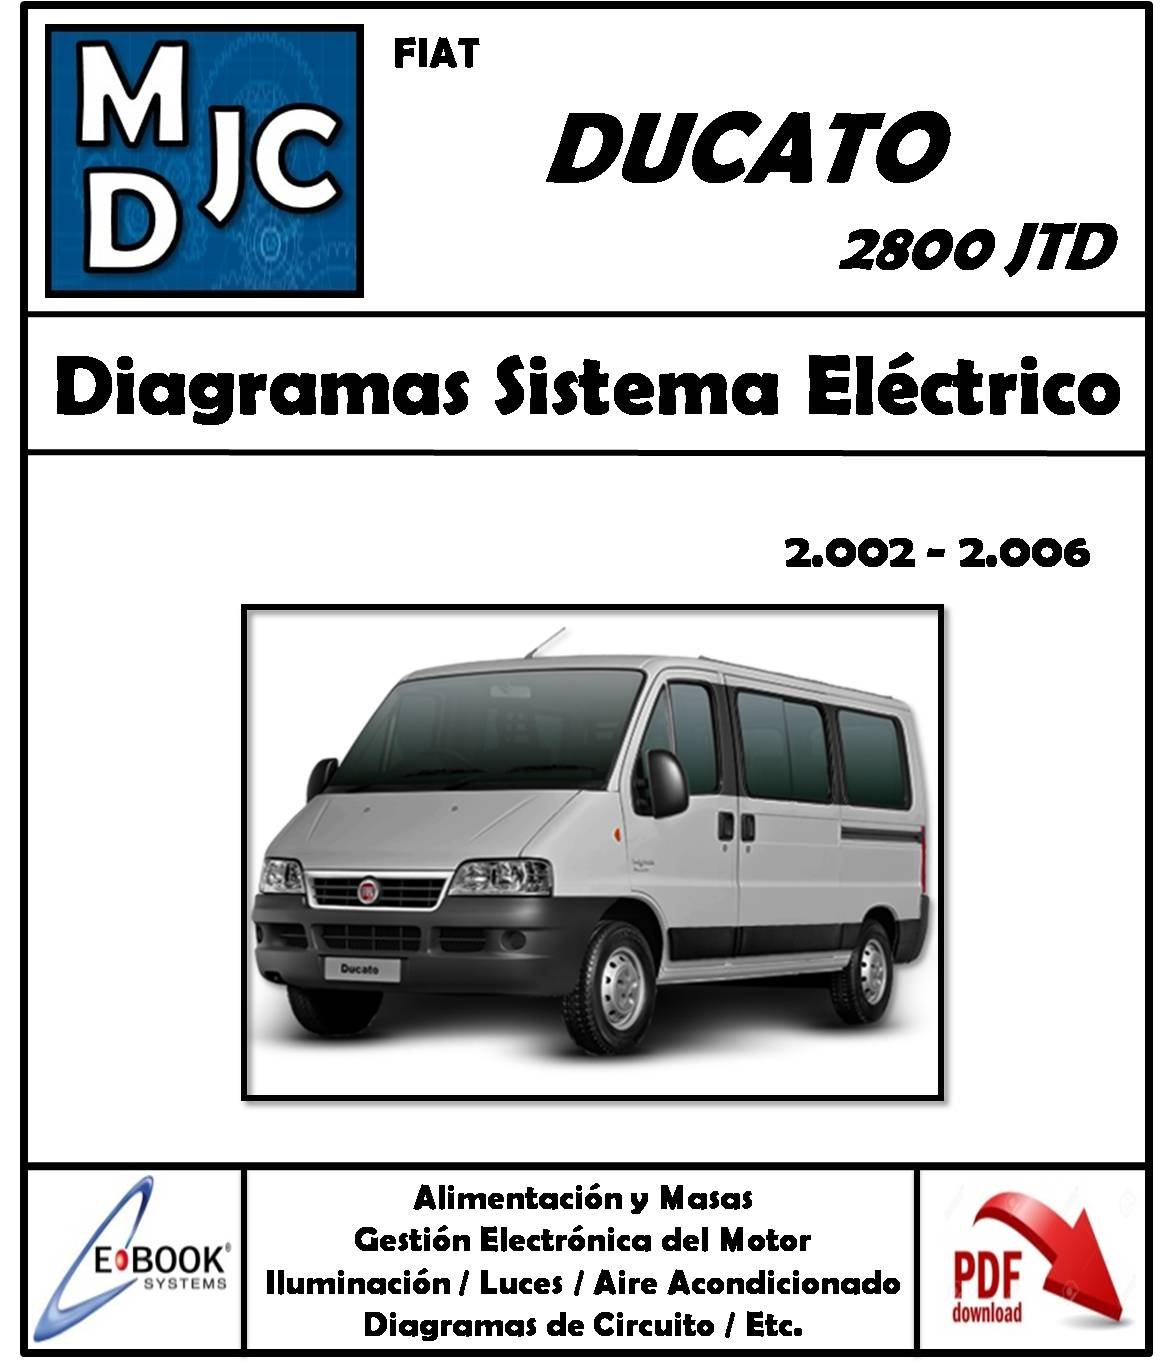 Diagramas Sistema Eléctrico Fiat Ducato 2800 JTD //  2002 - 2006